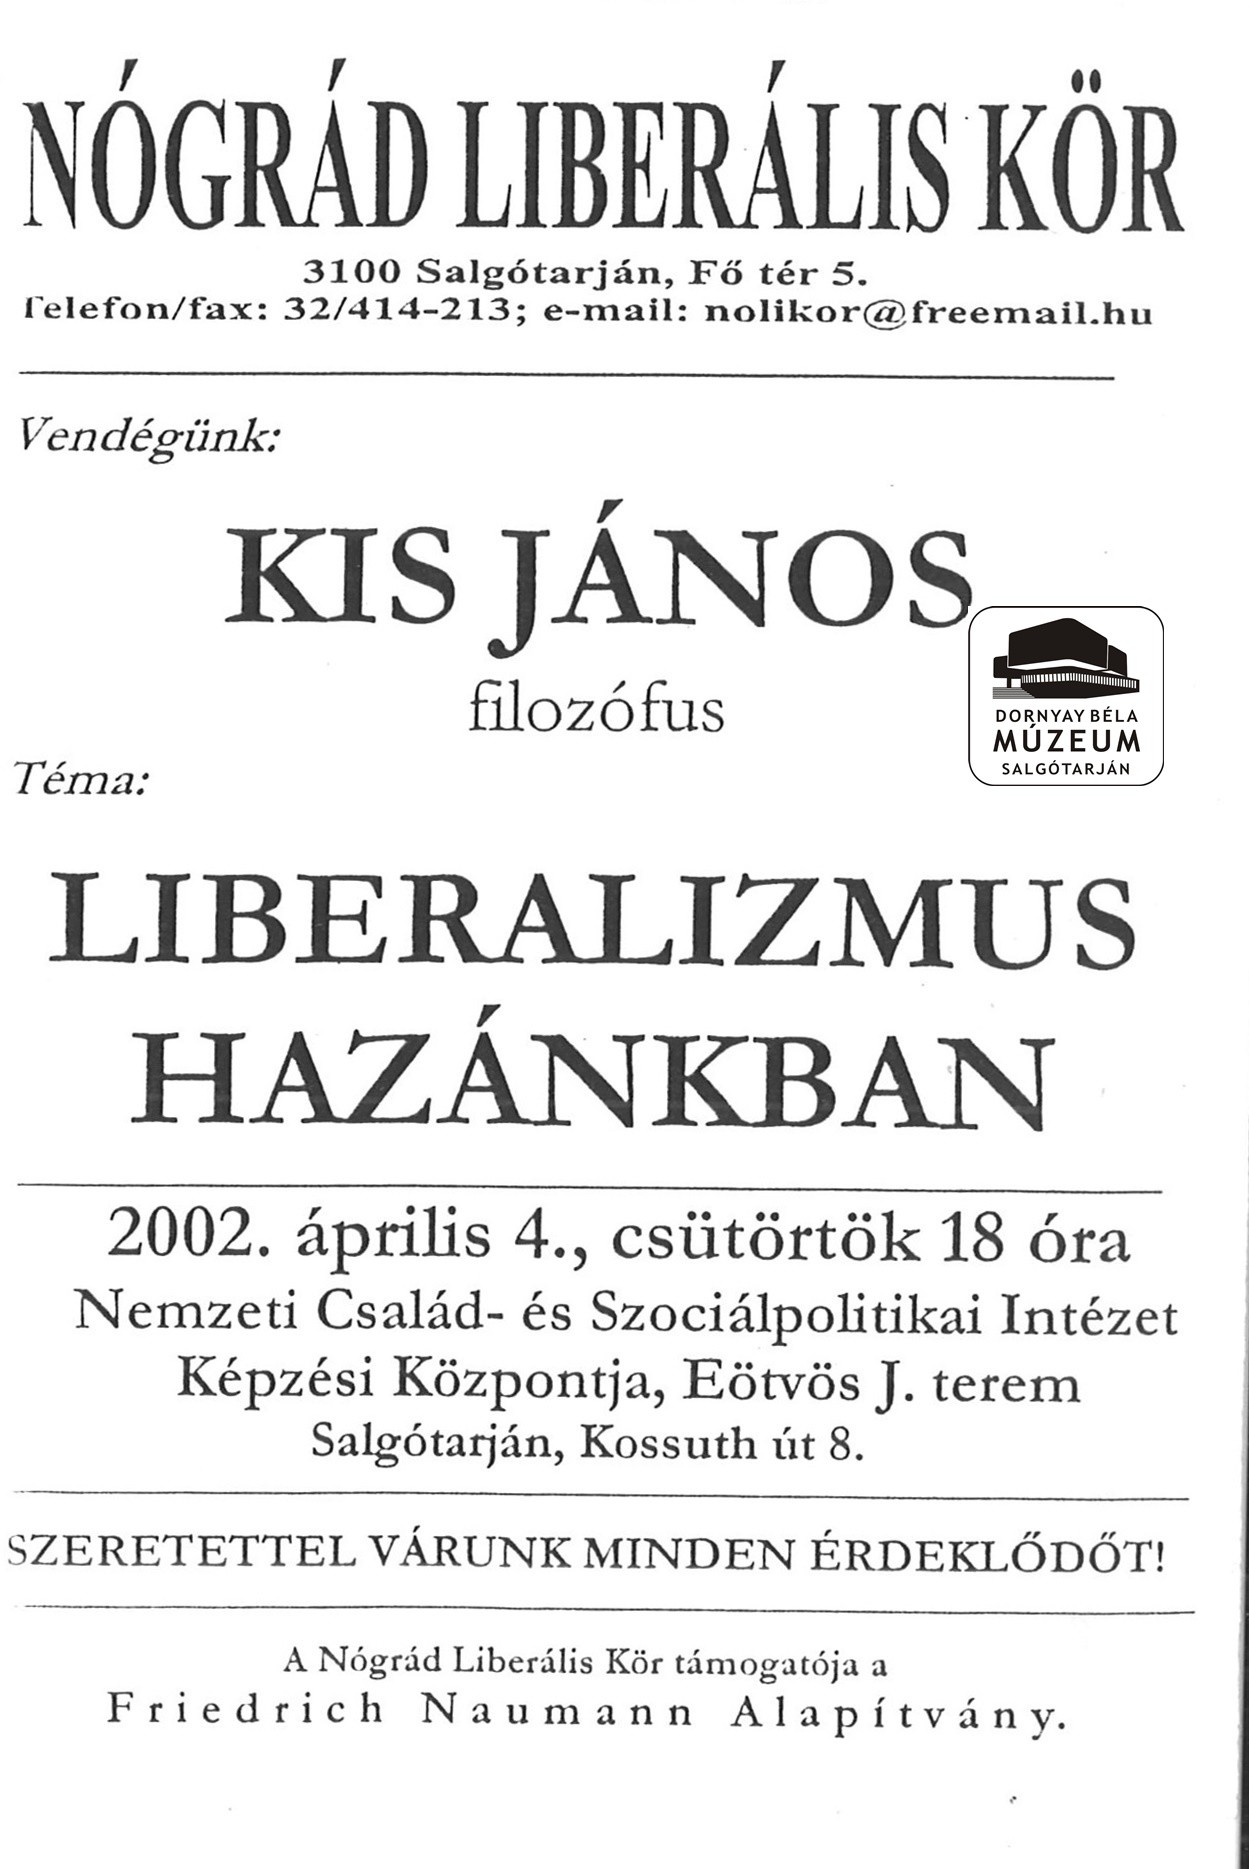 Nógrádi Liberális Kör meghívója Kis János filozófus Liberalizmus Hazánkban c. előadása (Dornyay Béla Múzeum, Salgótarján CC BY-NC-SA)